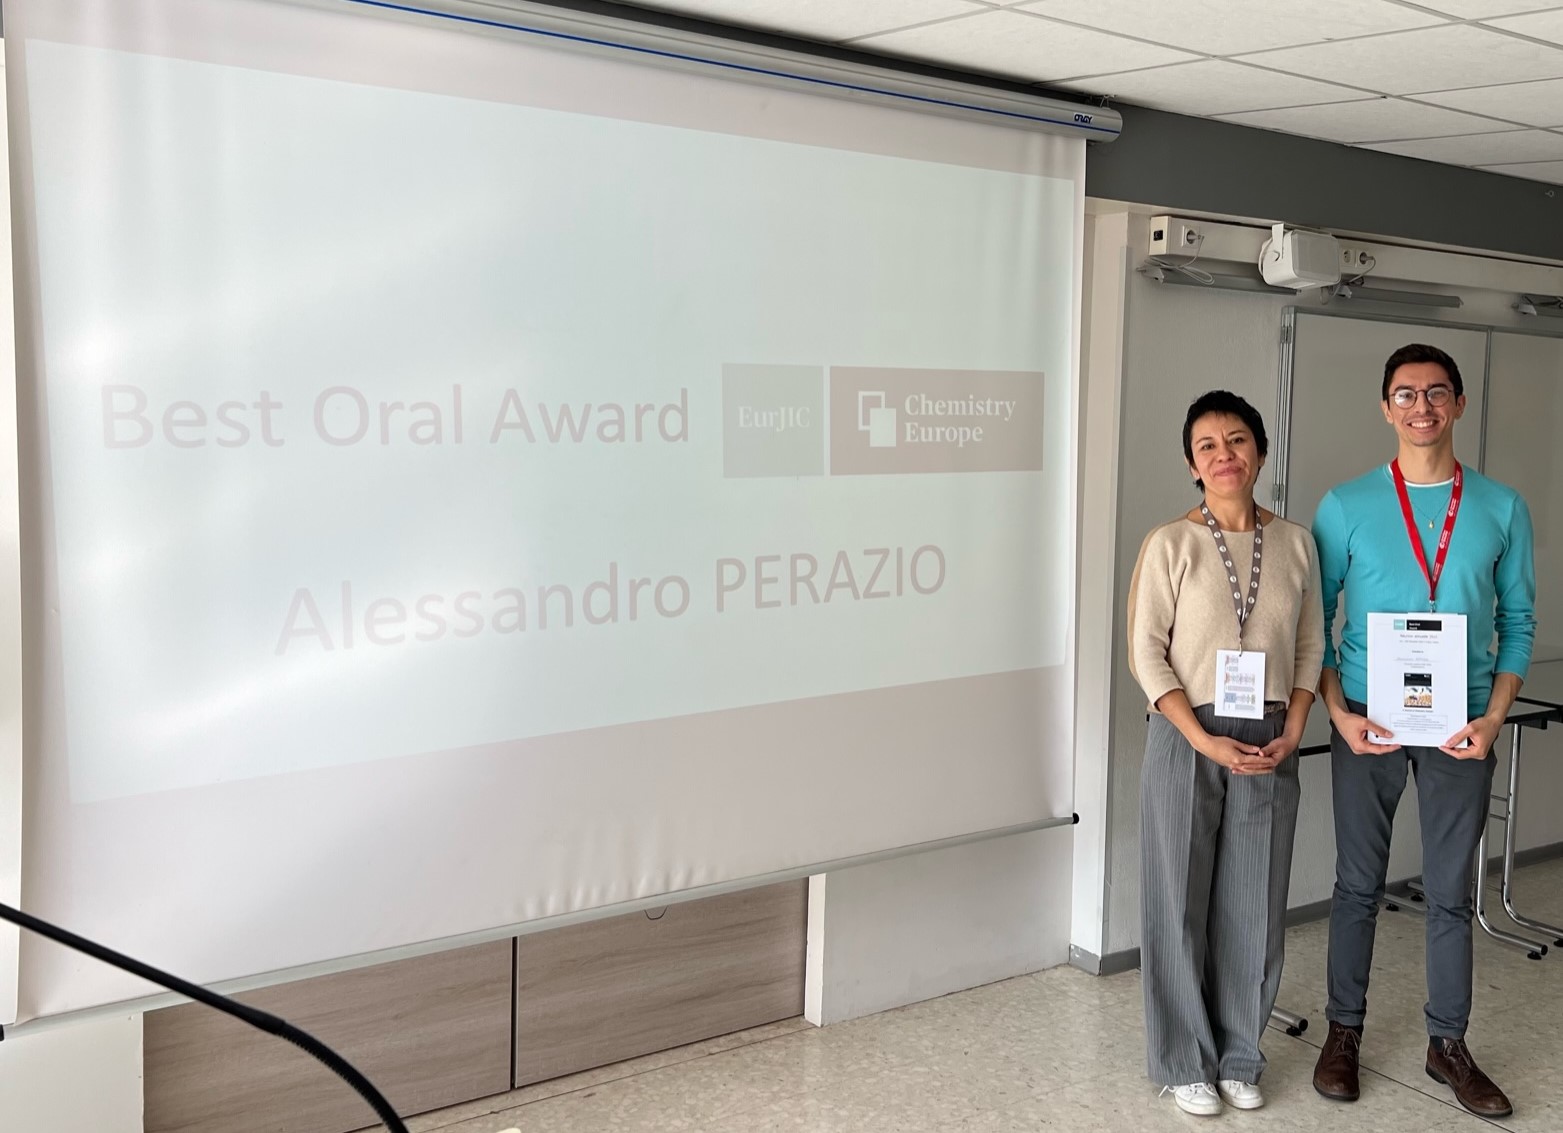 La présentation orale d’Alessandro Perazio a été récompensée par le premier prix, décerné par la maison d’édition EurJIC, sponsor du congrès.